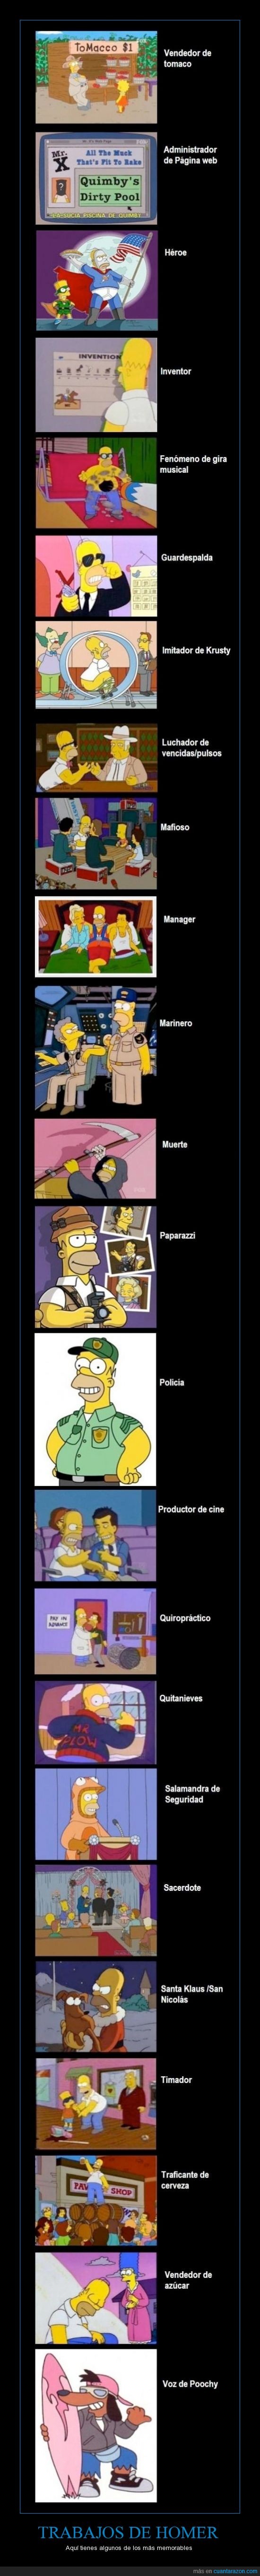 Paro,Simpson,Los simpson,Homero,Trabajos